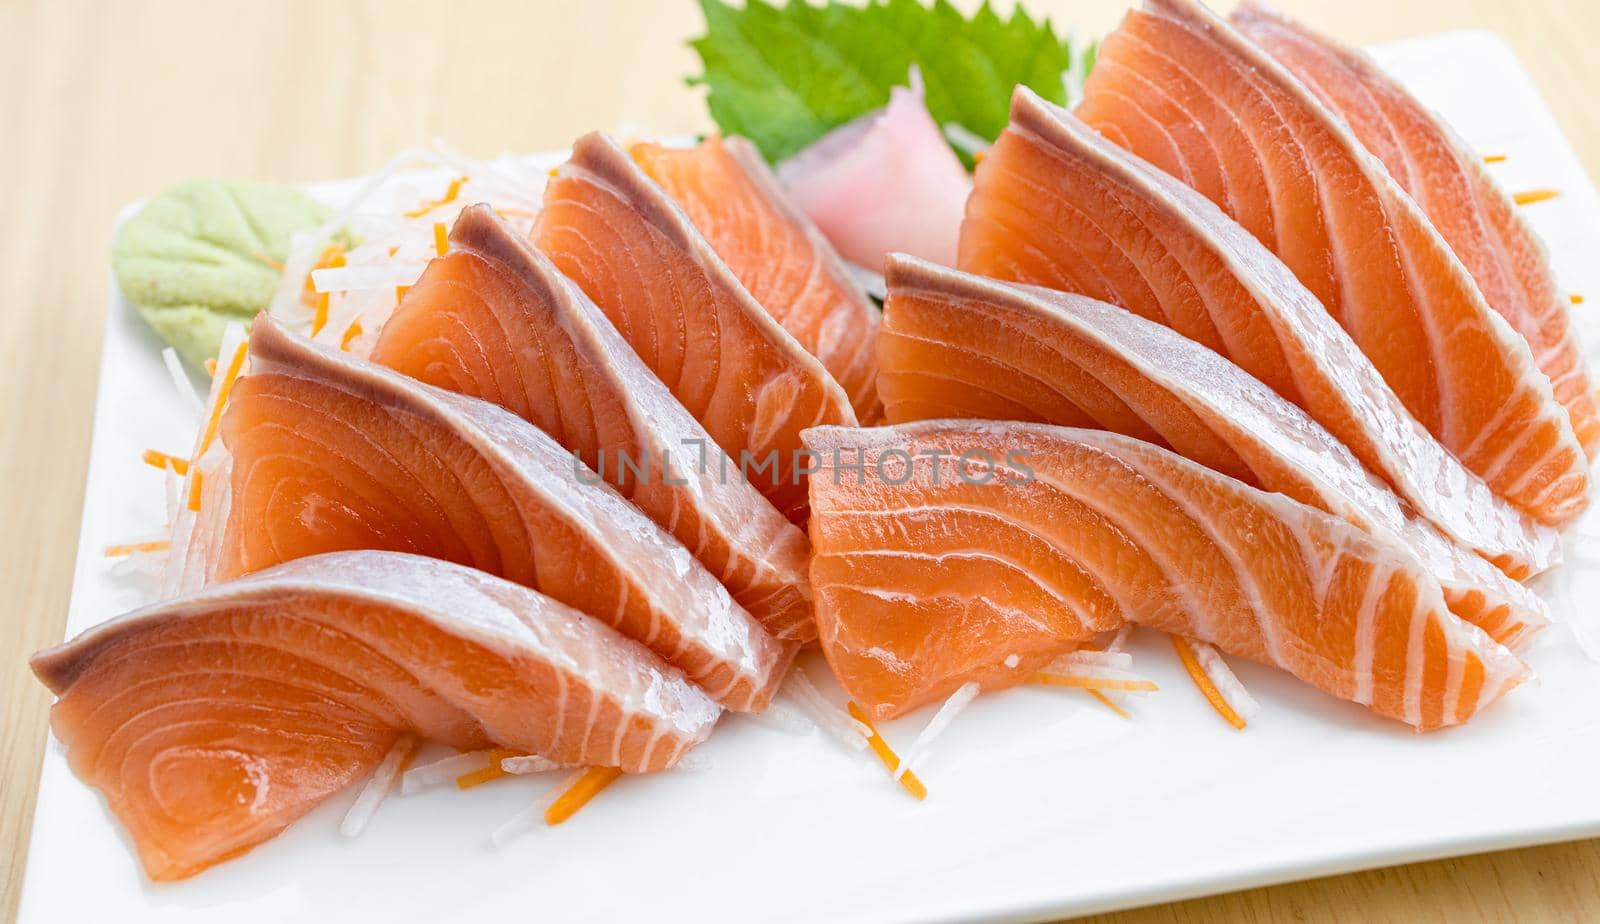 Salmon Sashimi on white background. Japan food concept